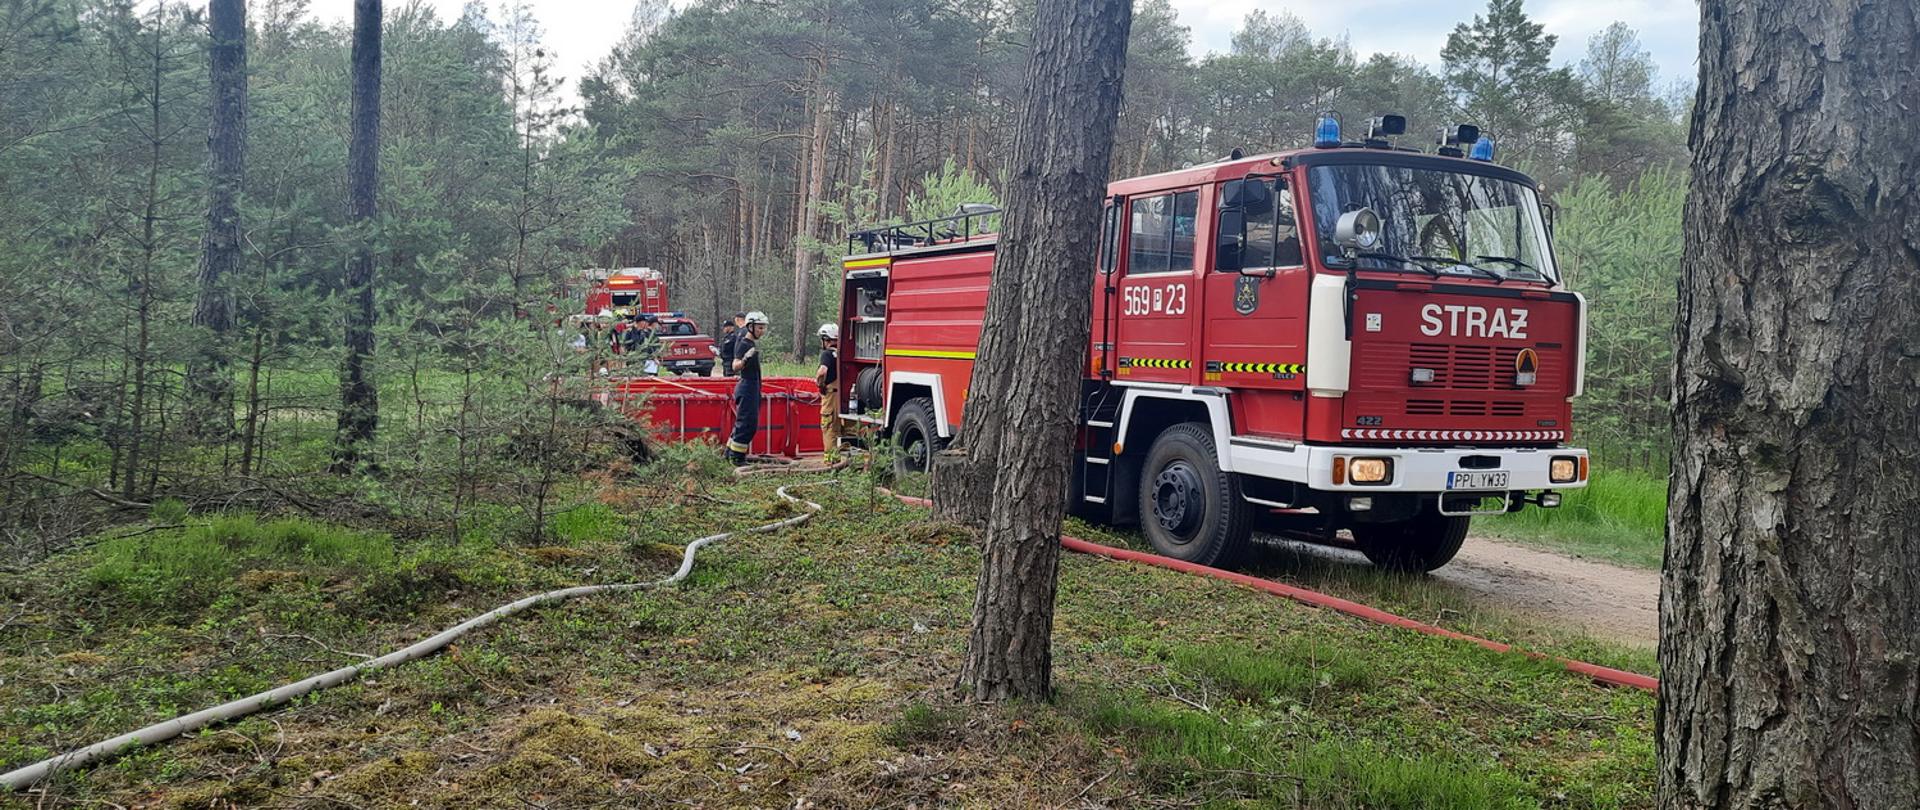 Wóz strażacki stoi na leśnej ścieżce, za nim widoczny brezentowy zbiornik na wodę i znajdujący się przy nim strażacy